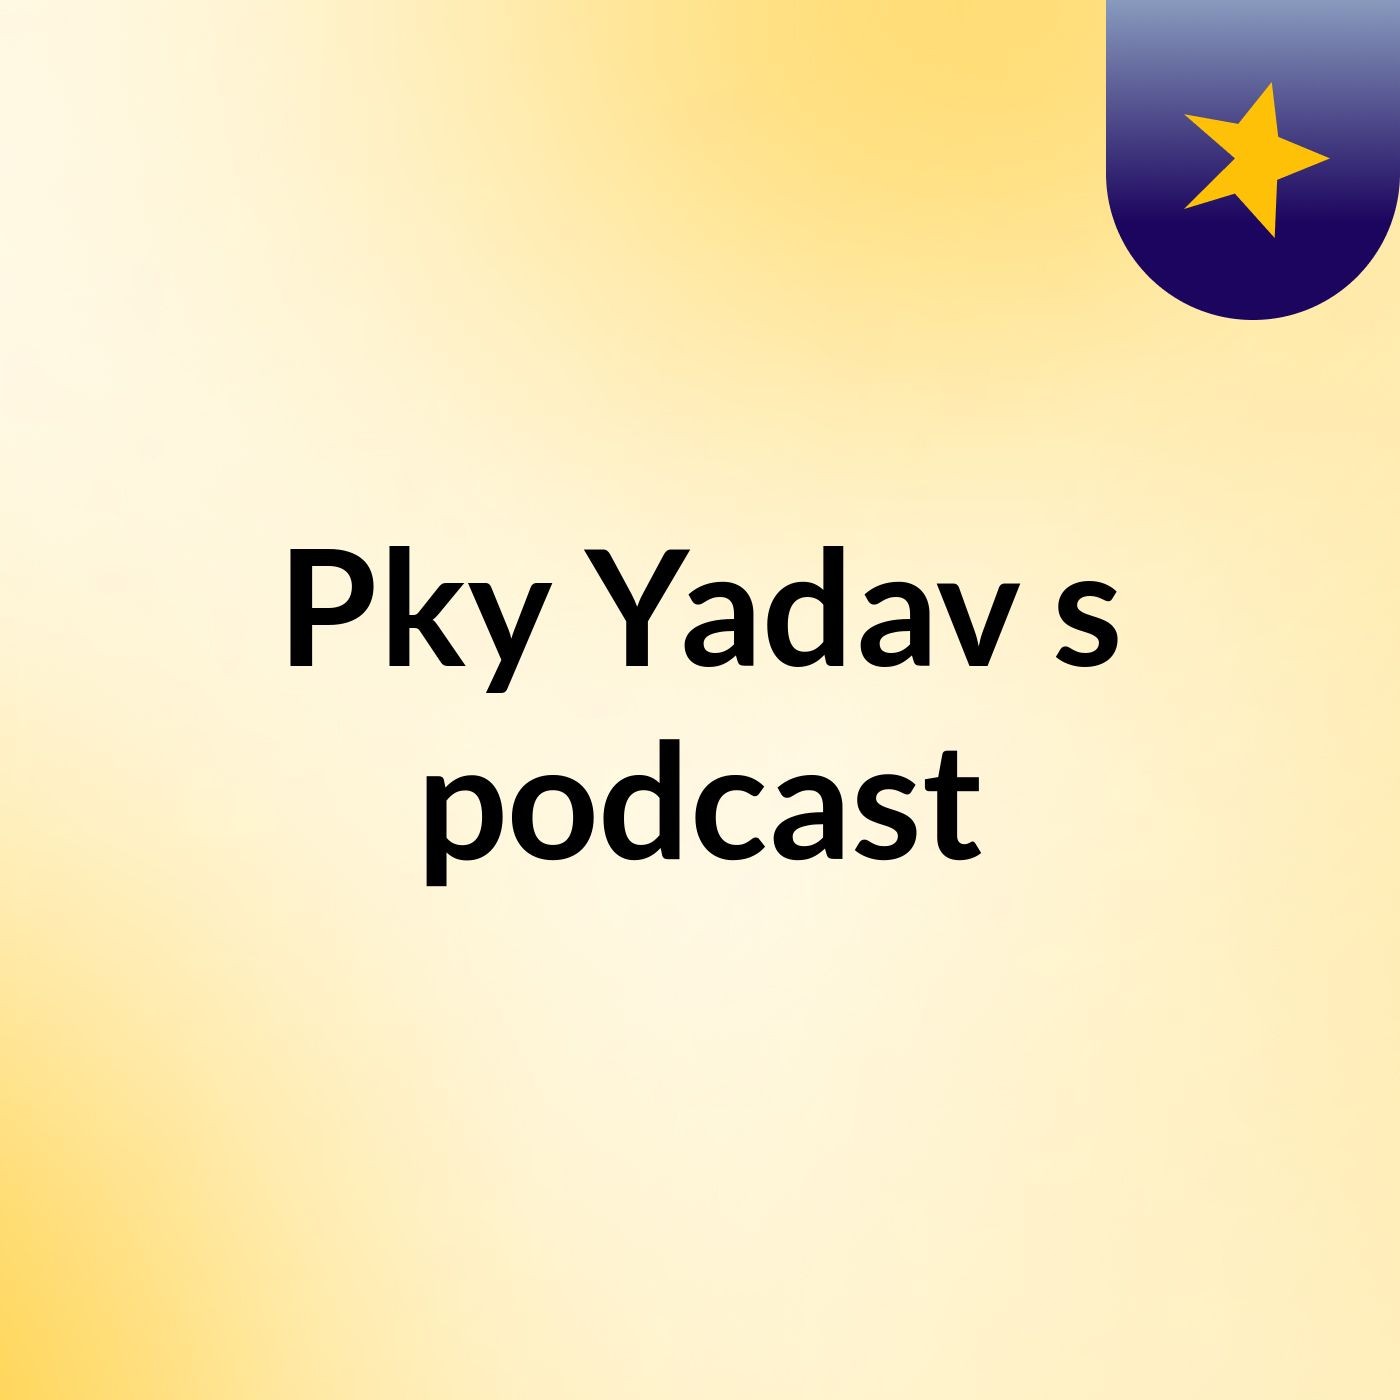 Pky Yadav's podcast